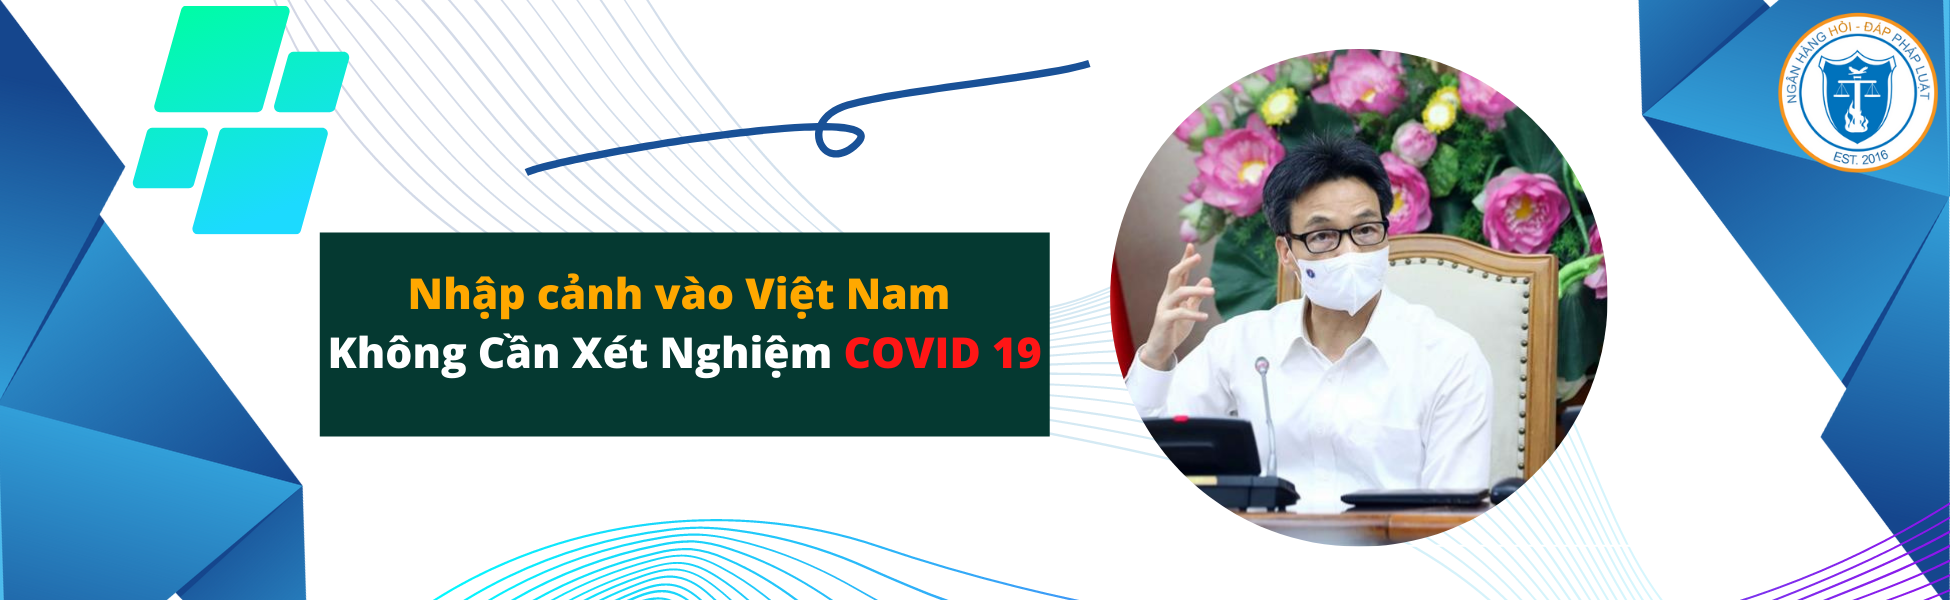 Nhập cảnh vào Việt Nam không cần xét nghiệm Covid-19 từ ngày 15 tháng 5